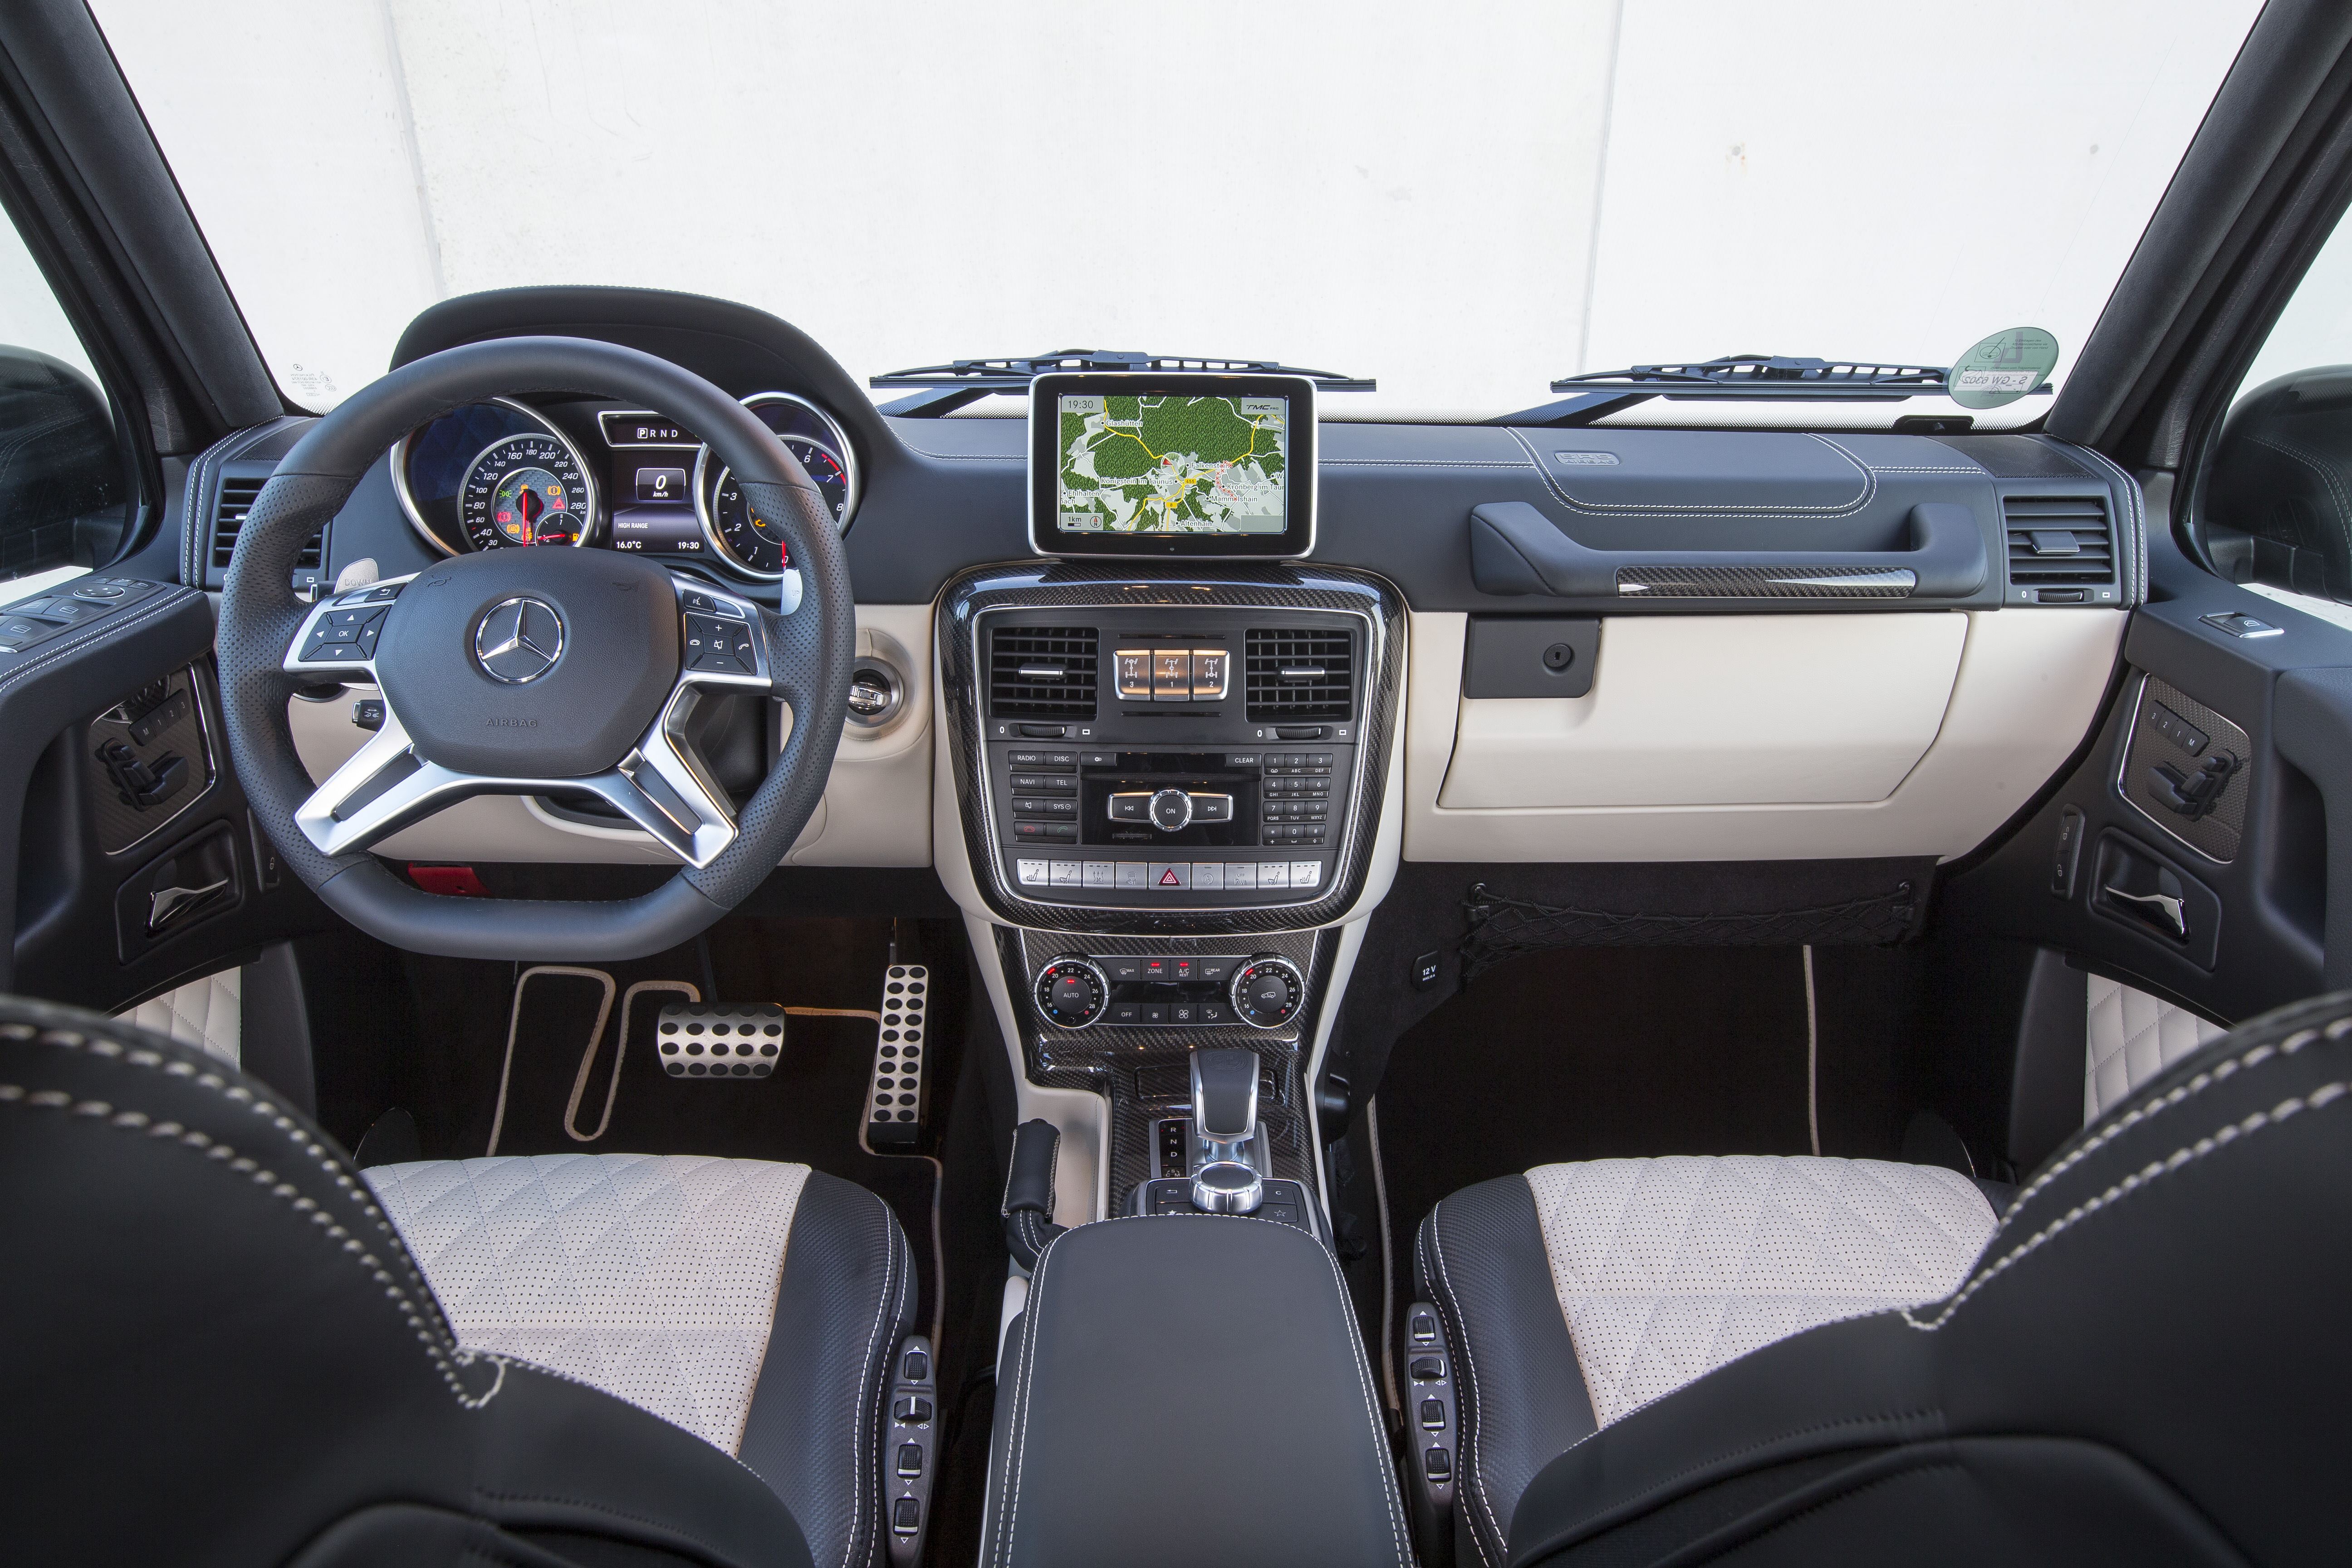 التقنيات التكنولوجية التي زودت بها السيارة مرسيدس جي 63 2016